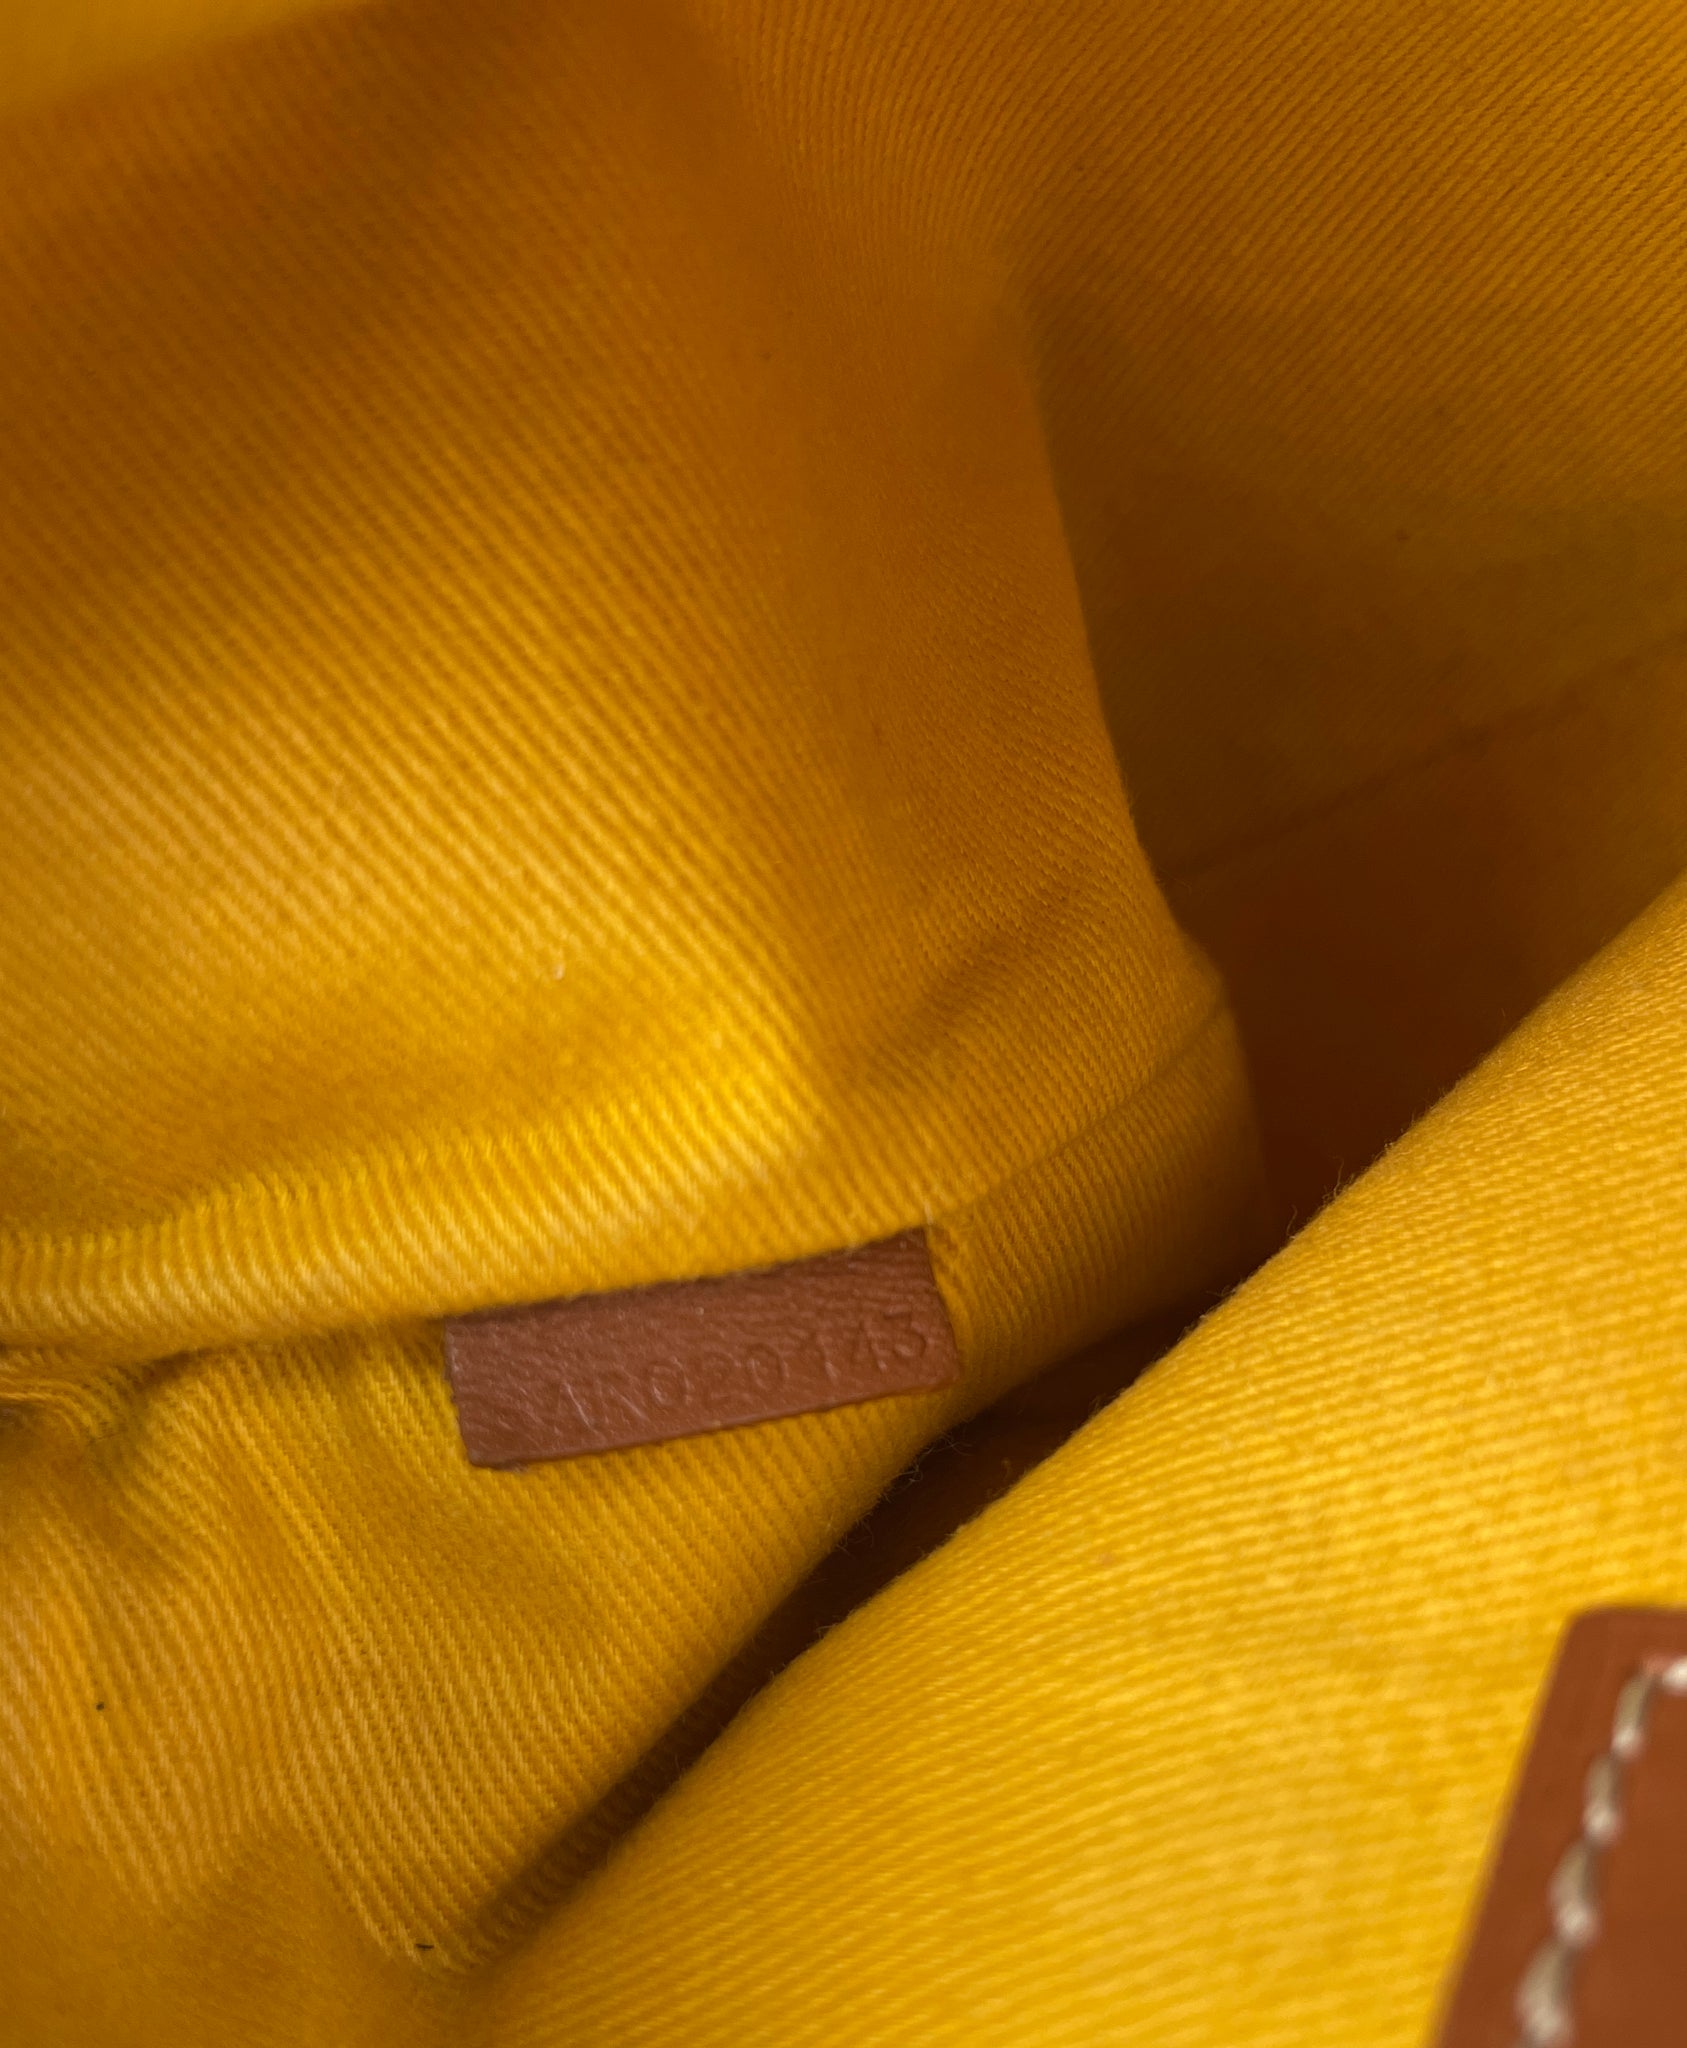 Sénat cloth clutch bag Goyard Grey in Cloth - 24072505